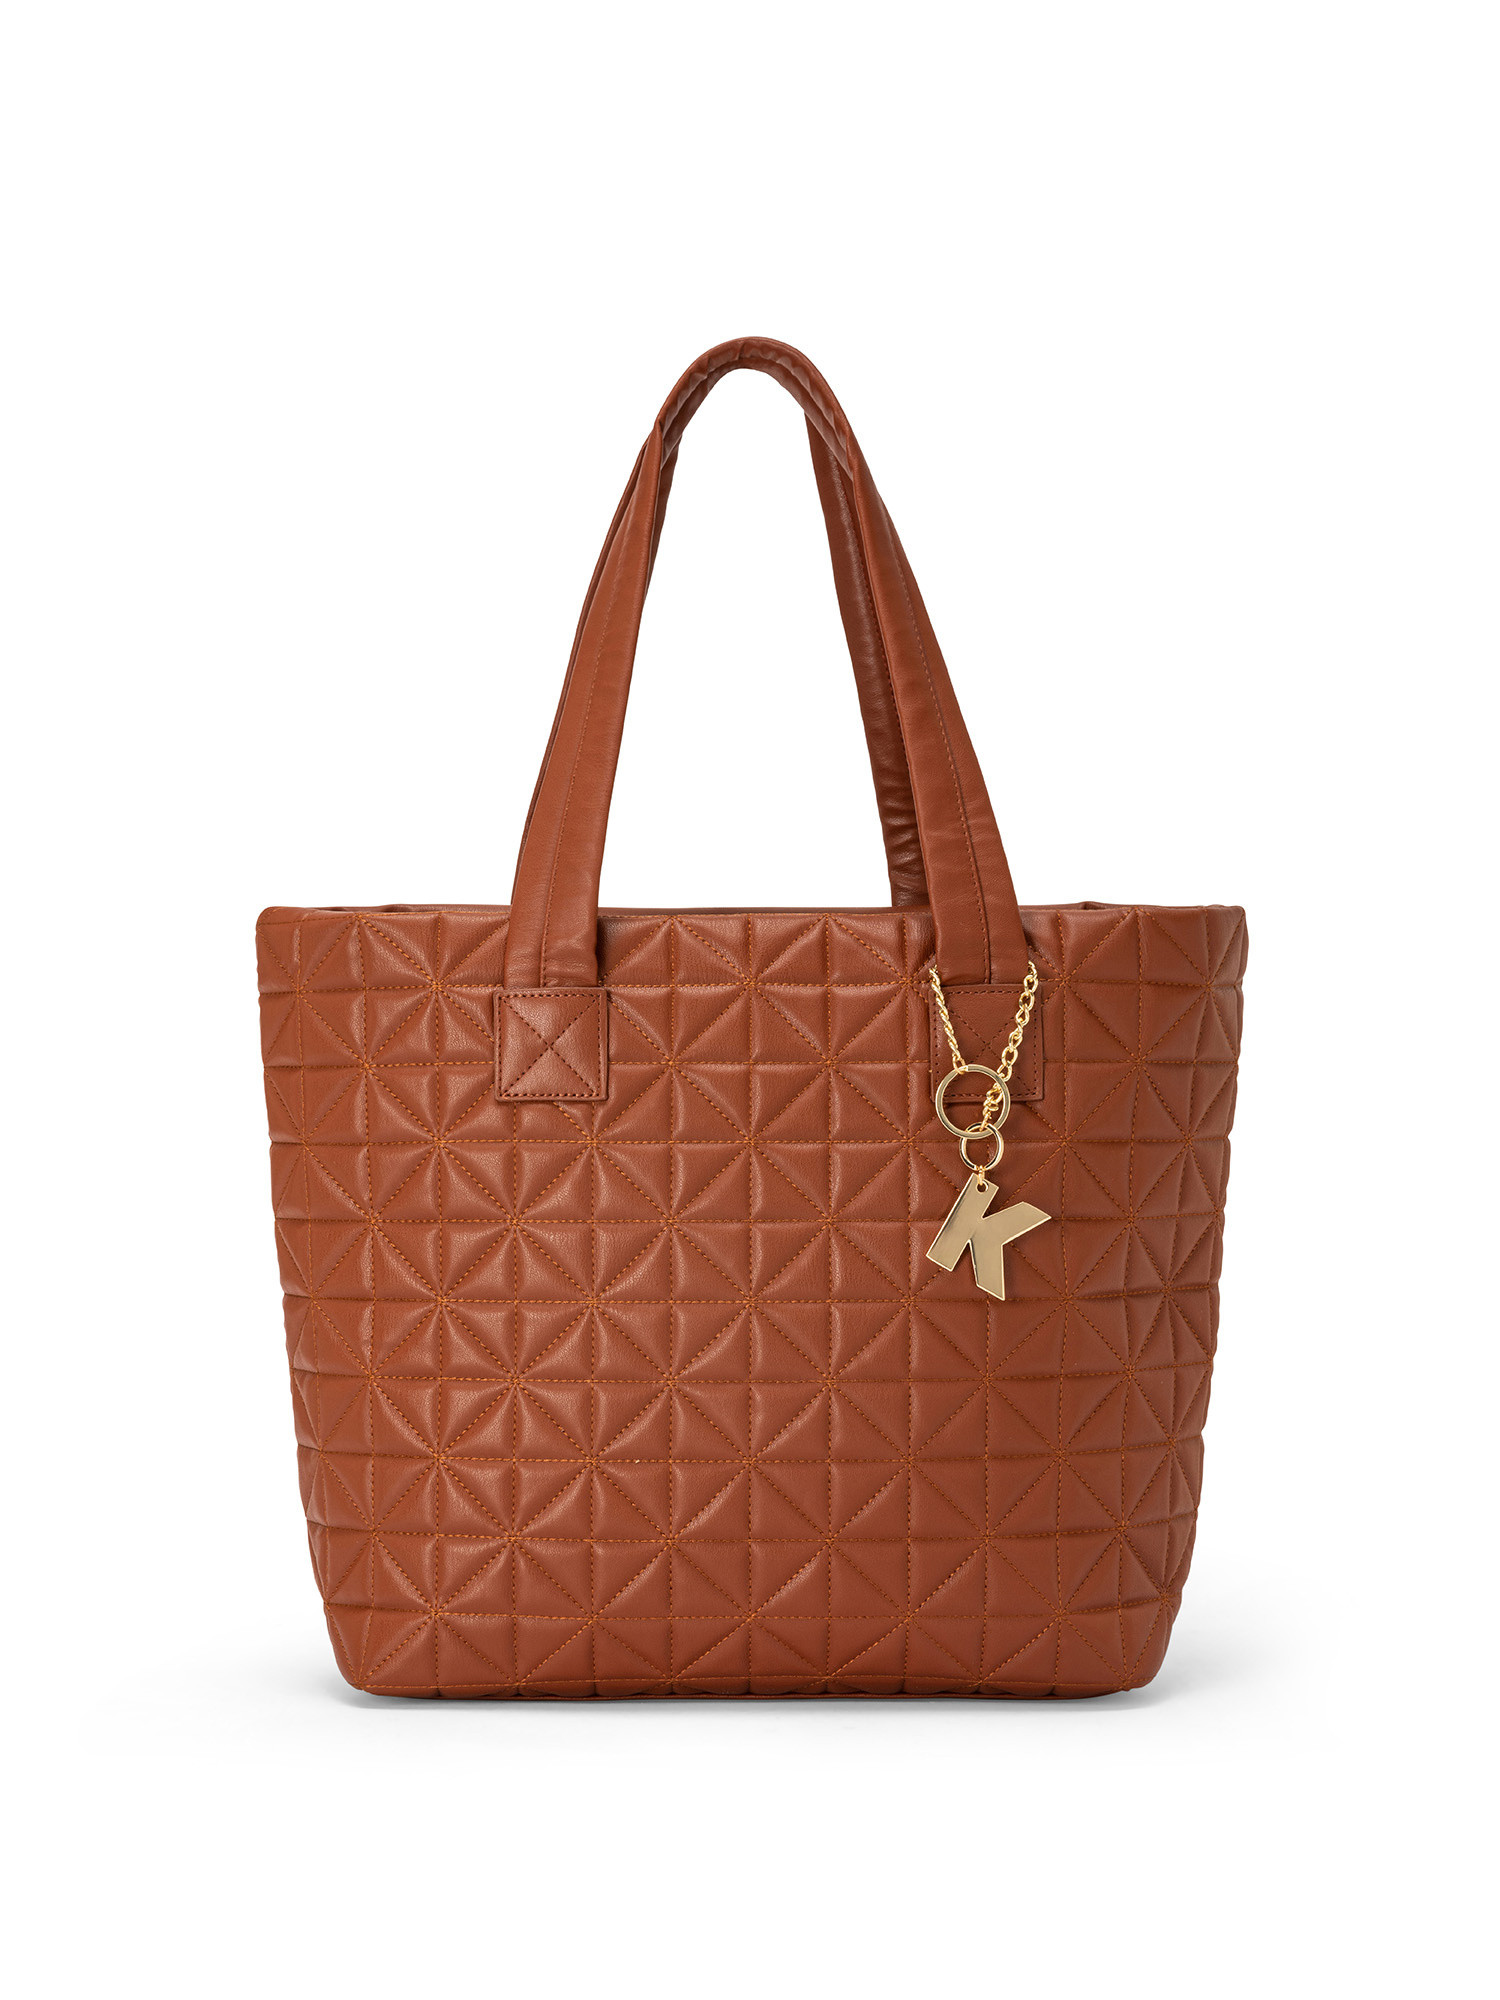 Koan - Shopping bag with motif, Brown, large image number 0